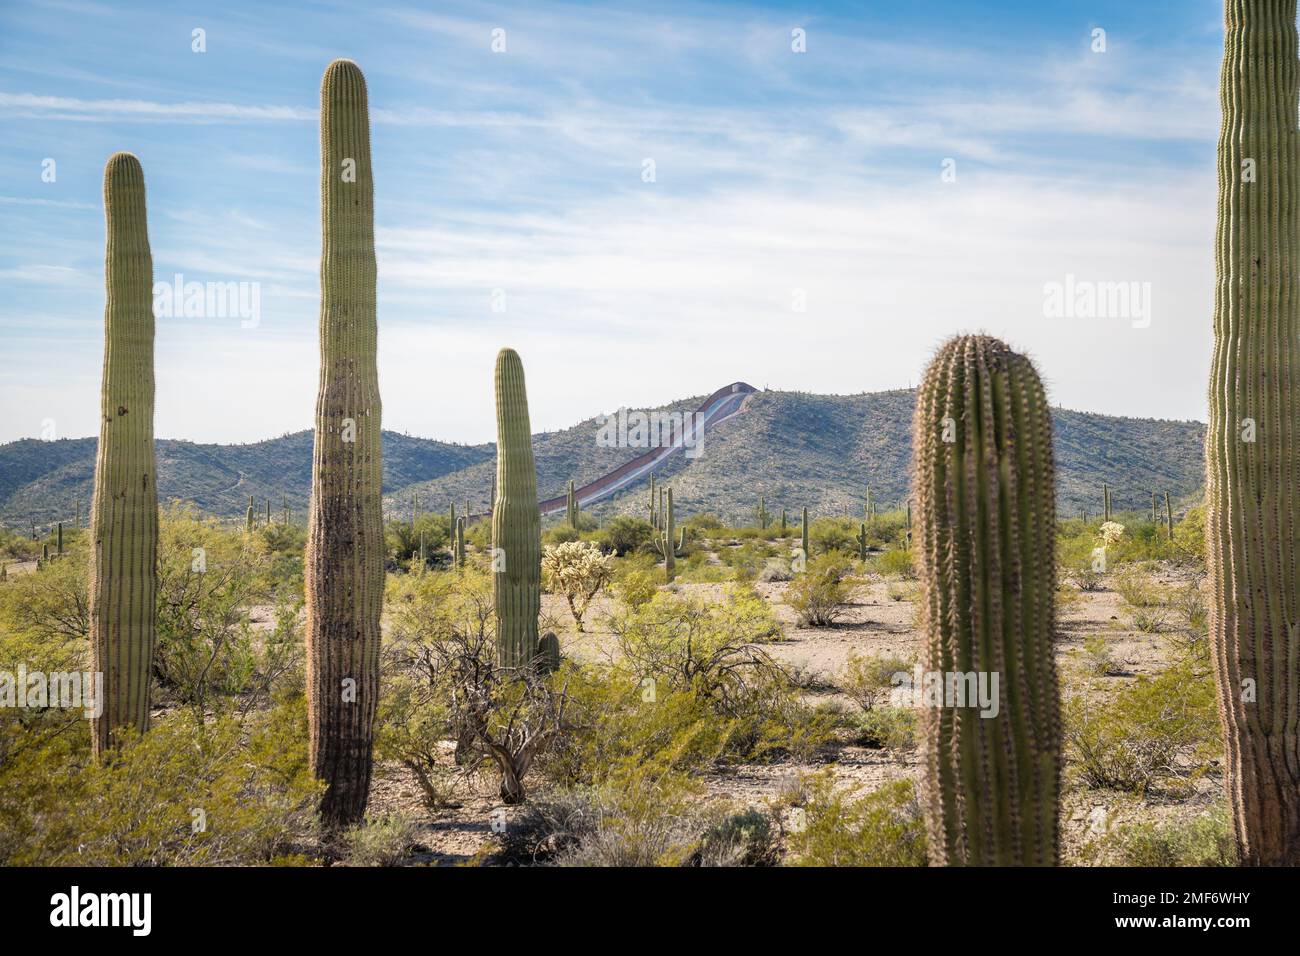 US - Mexican border wall - Arizona Stock Photo - Alamy